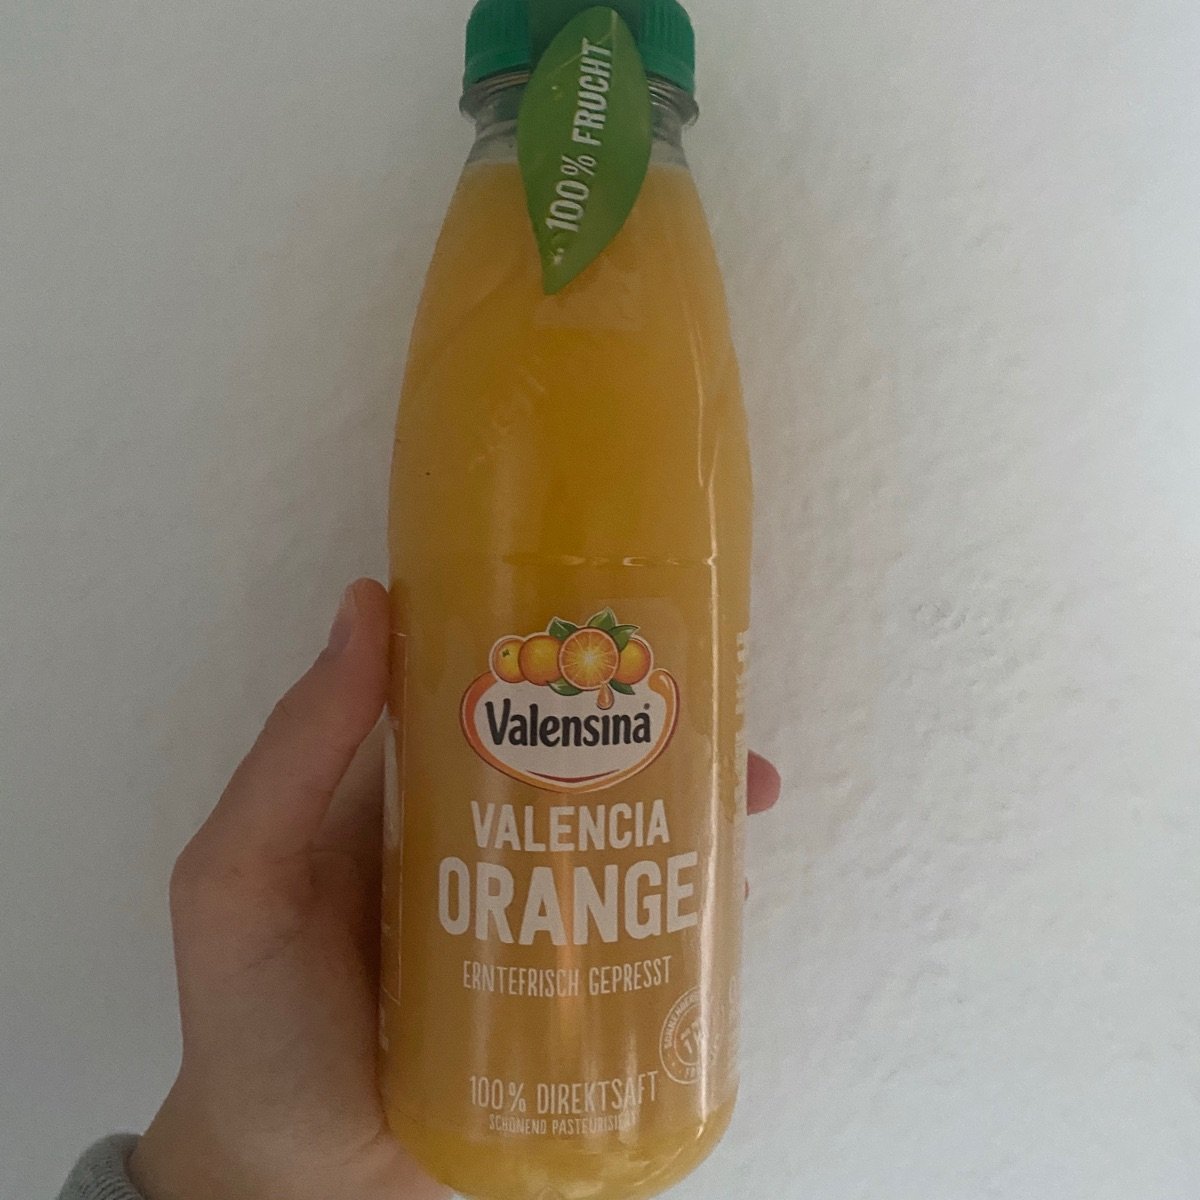 Valensina valensina orange Reviews | abillion